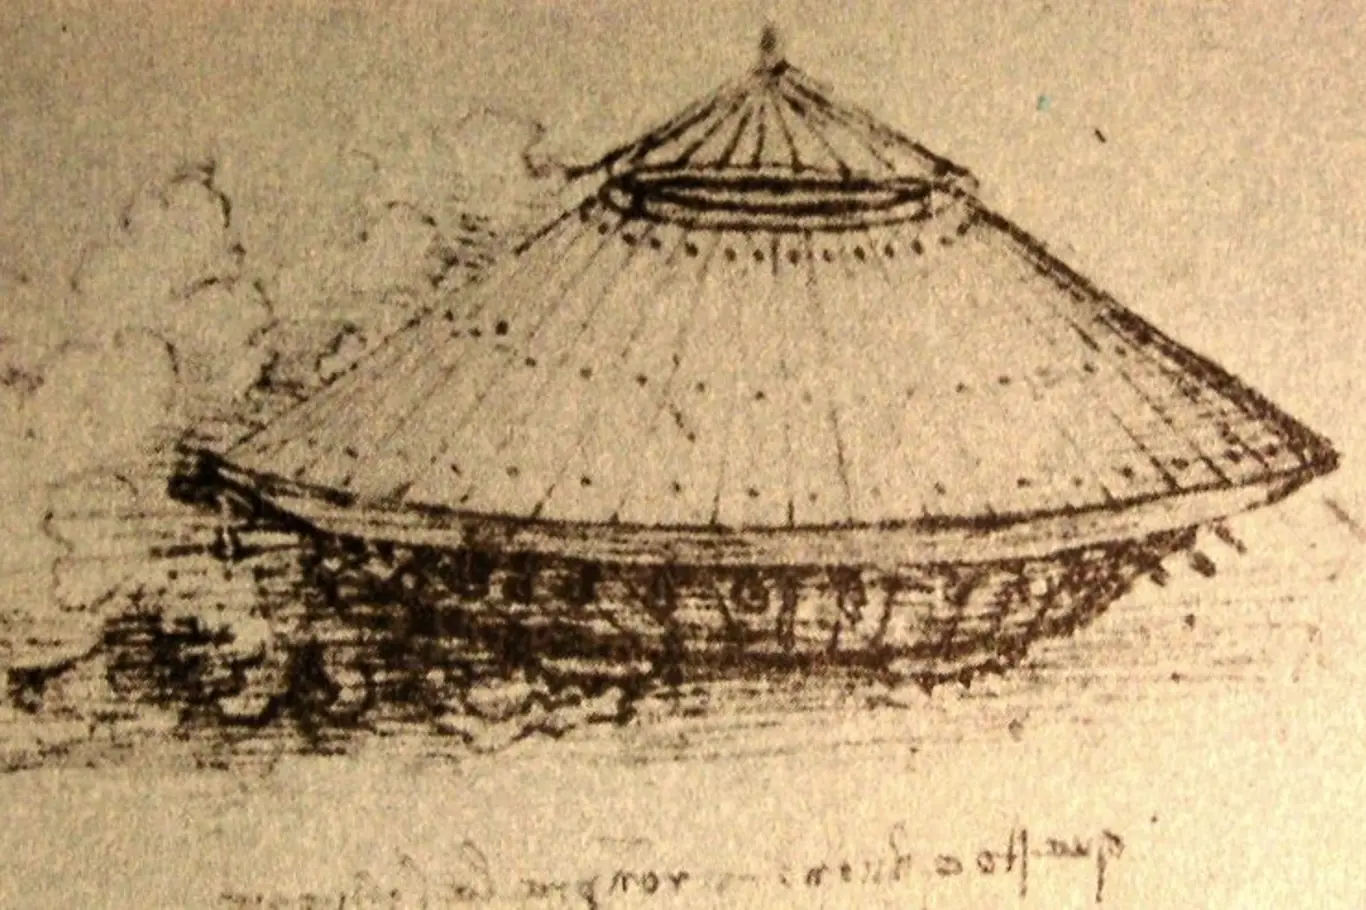 Kresba prvního obrněného vozidla od da Vinciho.